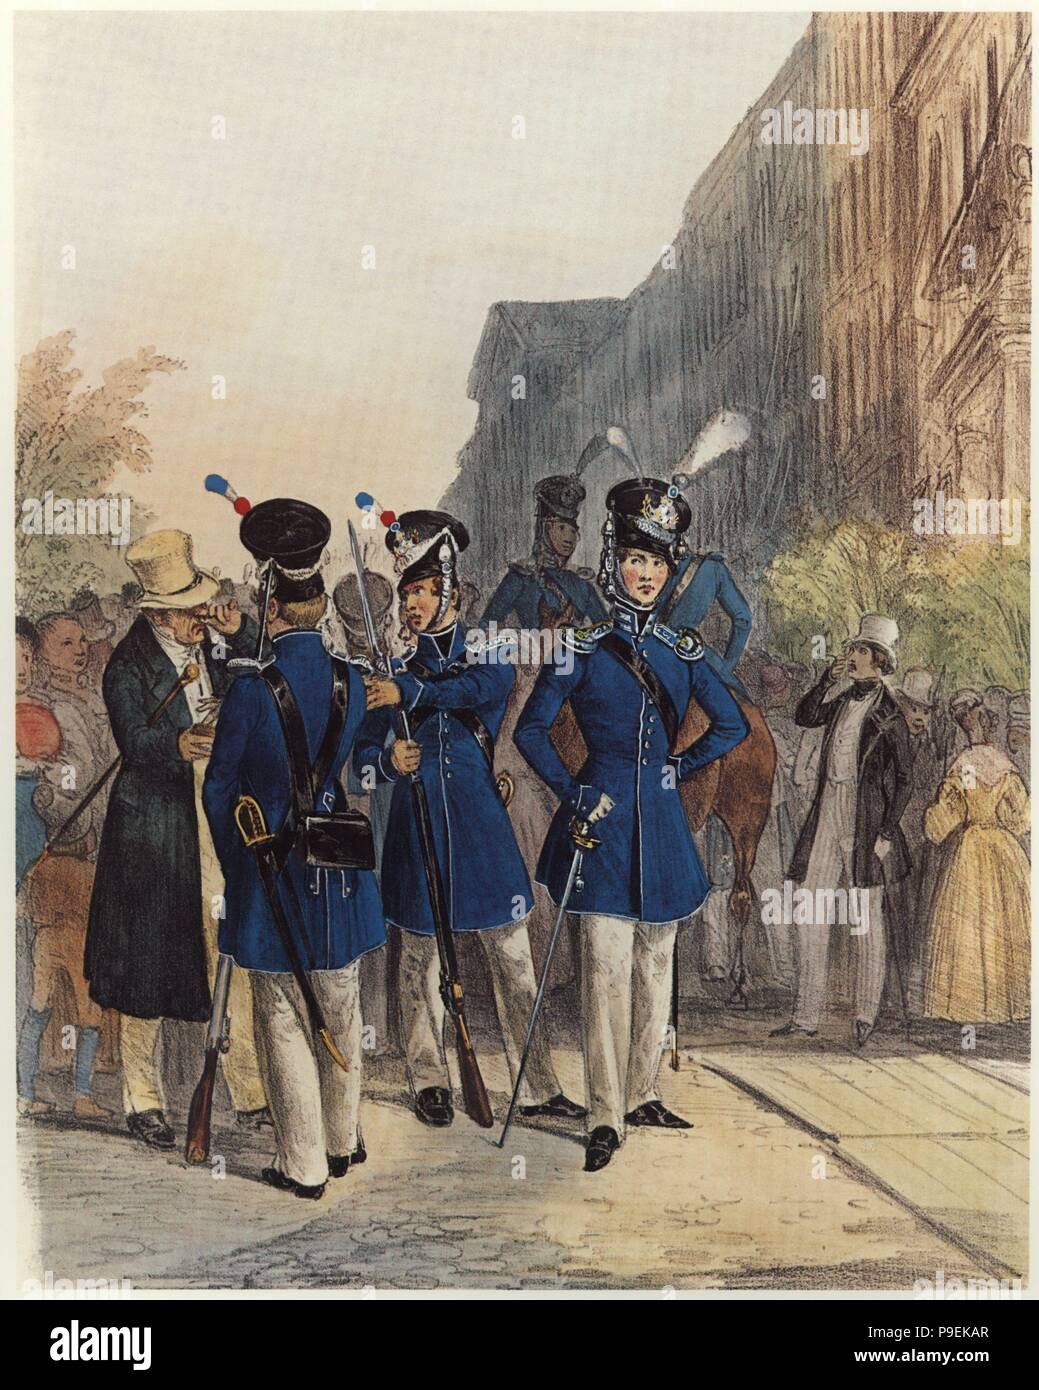 Alemania. Reino de Bayern. Uniformes del siglo XIX. Fusileros de un regimiento de infantería. Stock Photo